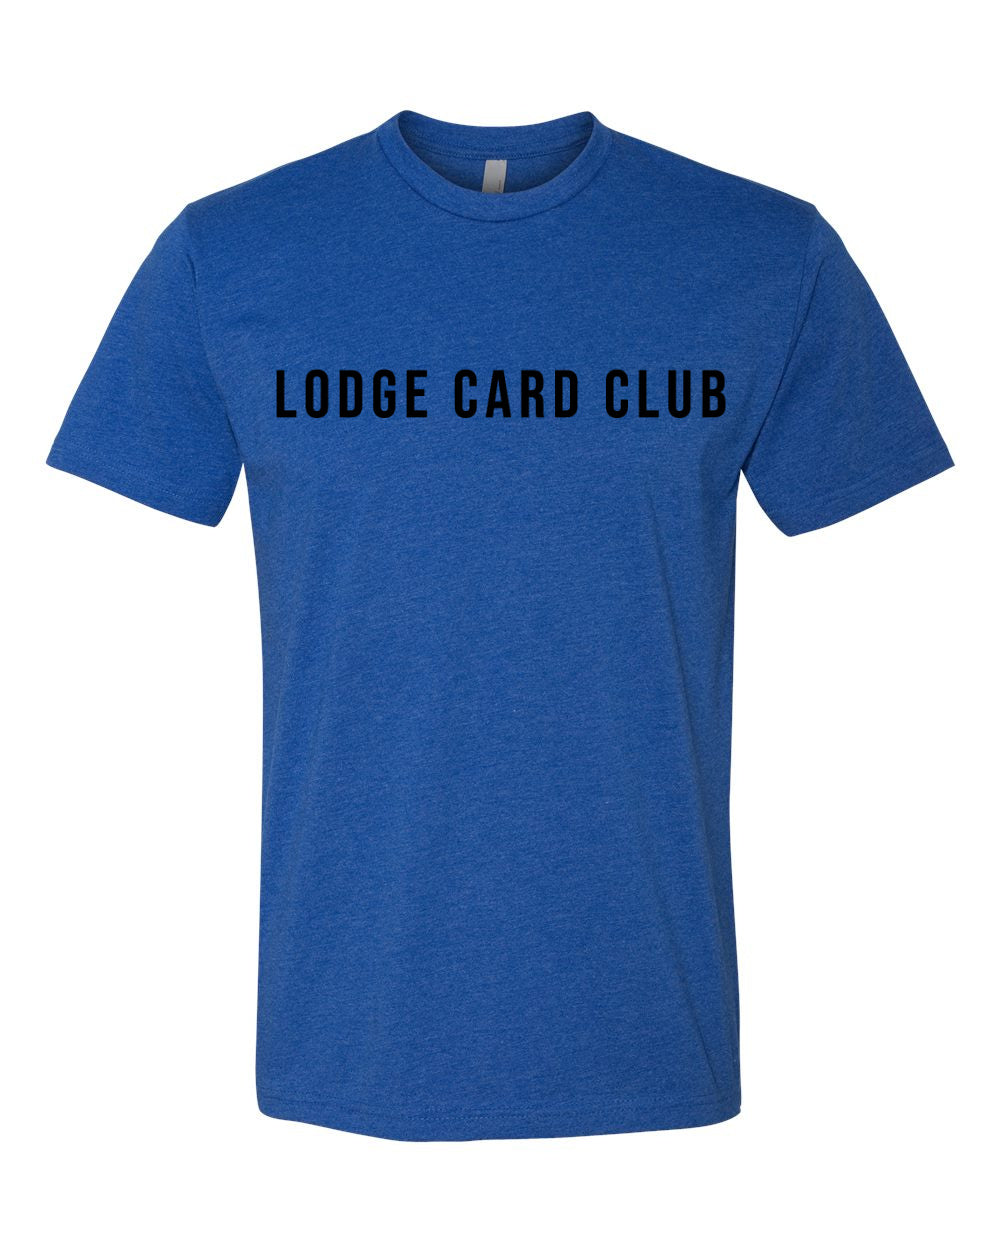 LCC Text Shirt - Royal Blue